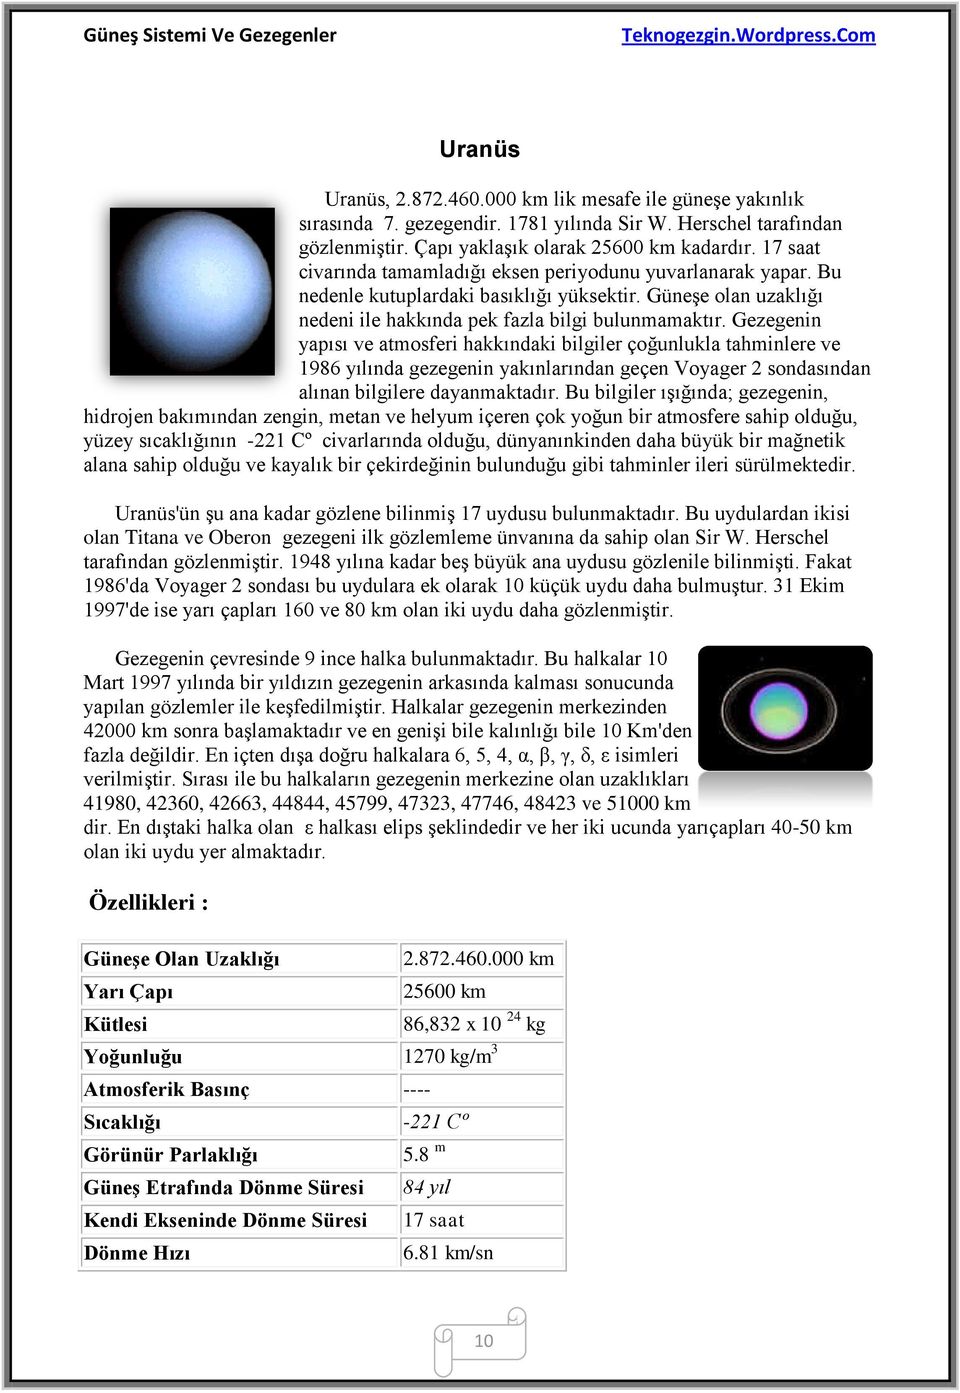 Gezegenin yapısı ve atmosferi hakkındaki bilgiler çoğunlukla tahminlere ve 1986 yılında gezegenin yakınlarından geçen Voyager 2 sondasından alınan bilgilere dayanmaktadır.